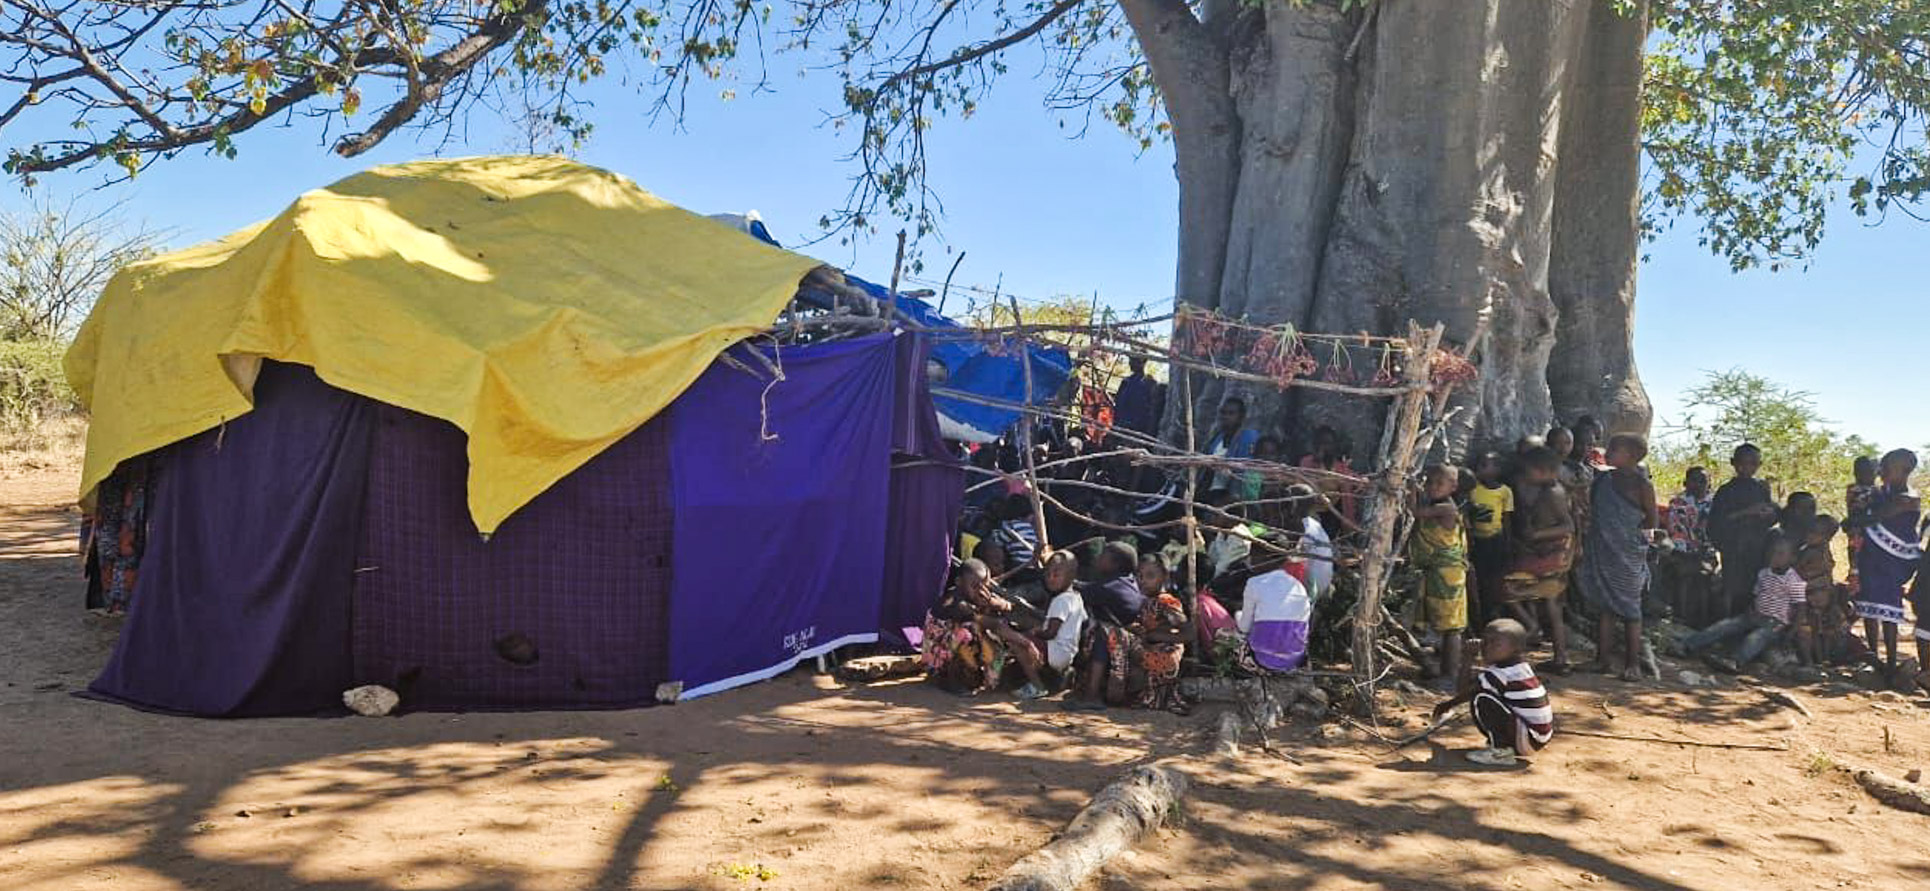 Mlambalasi – satul dintre baobabi